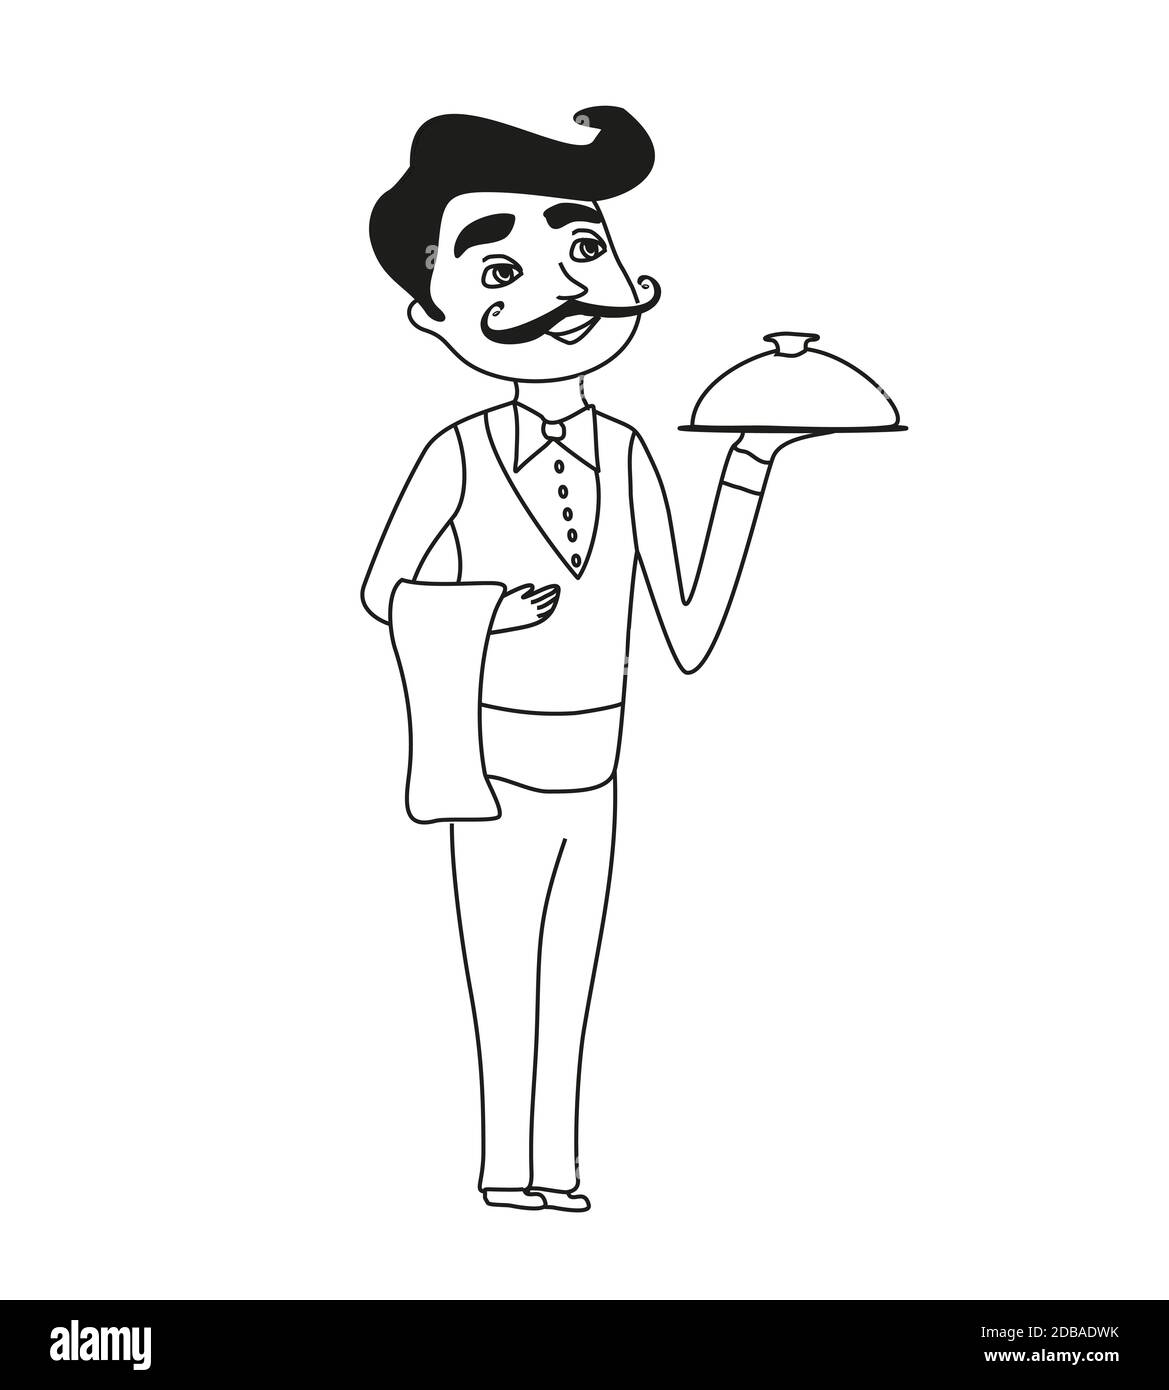 waiter humor